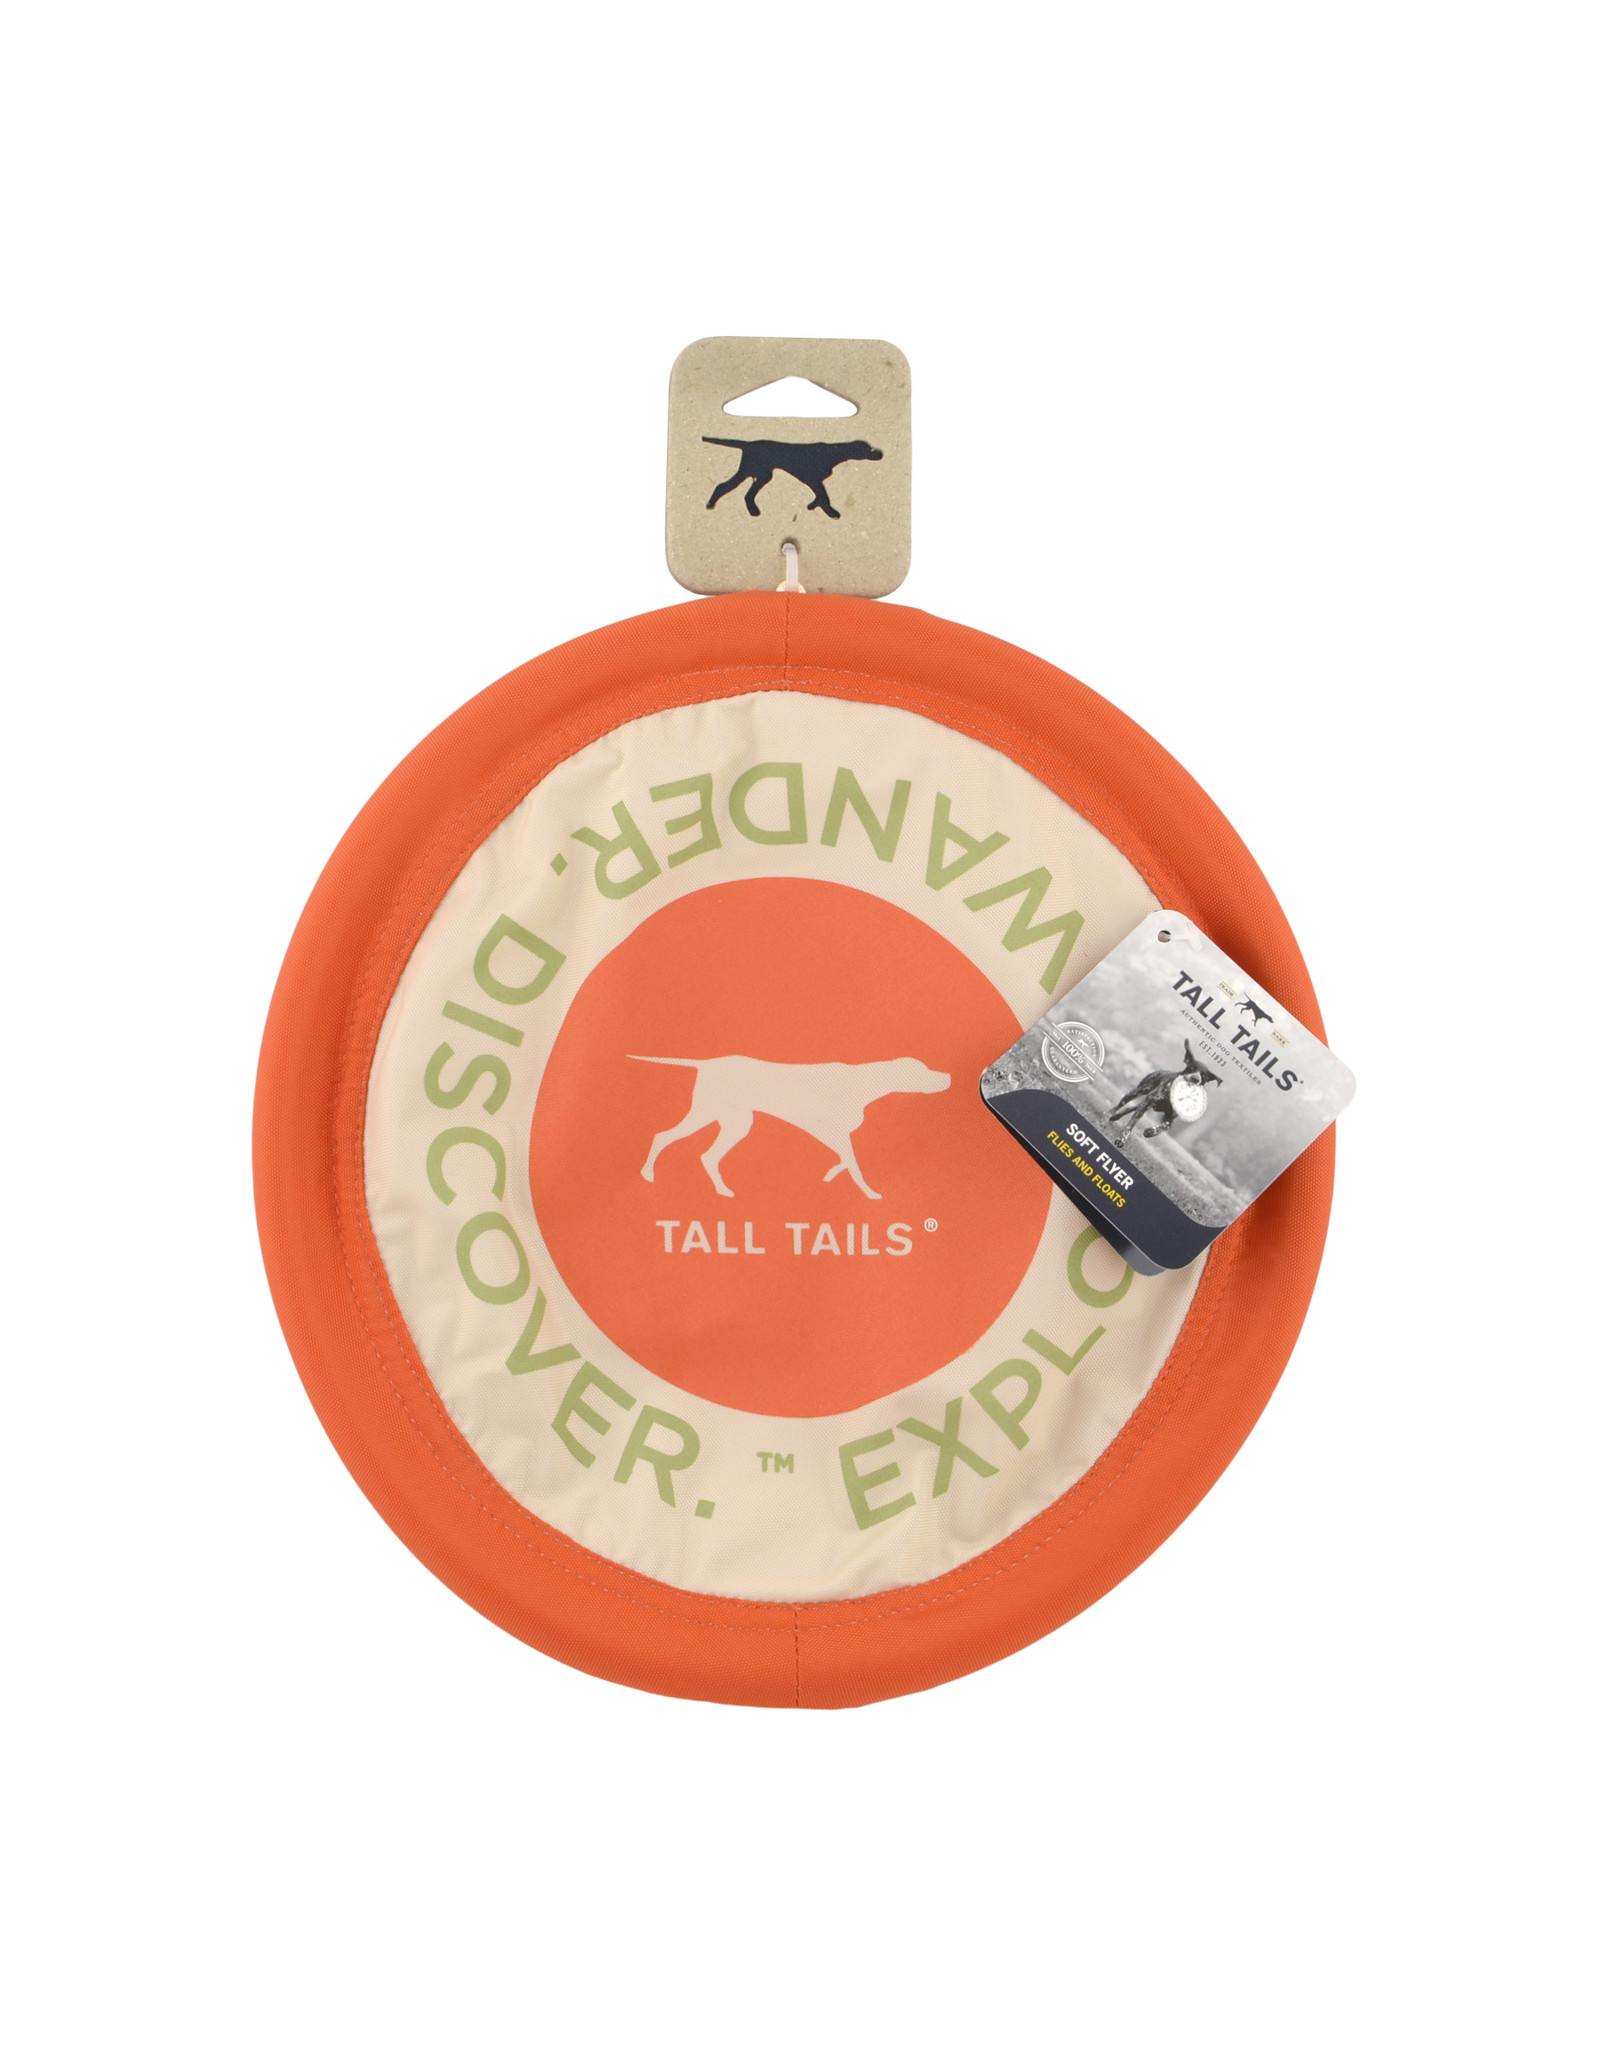 10" Flying Disc Dog Toy, orange